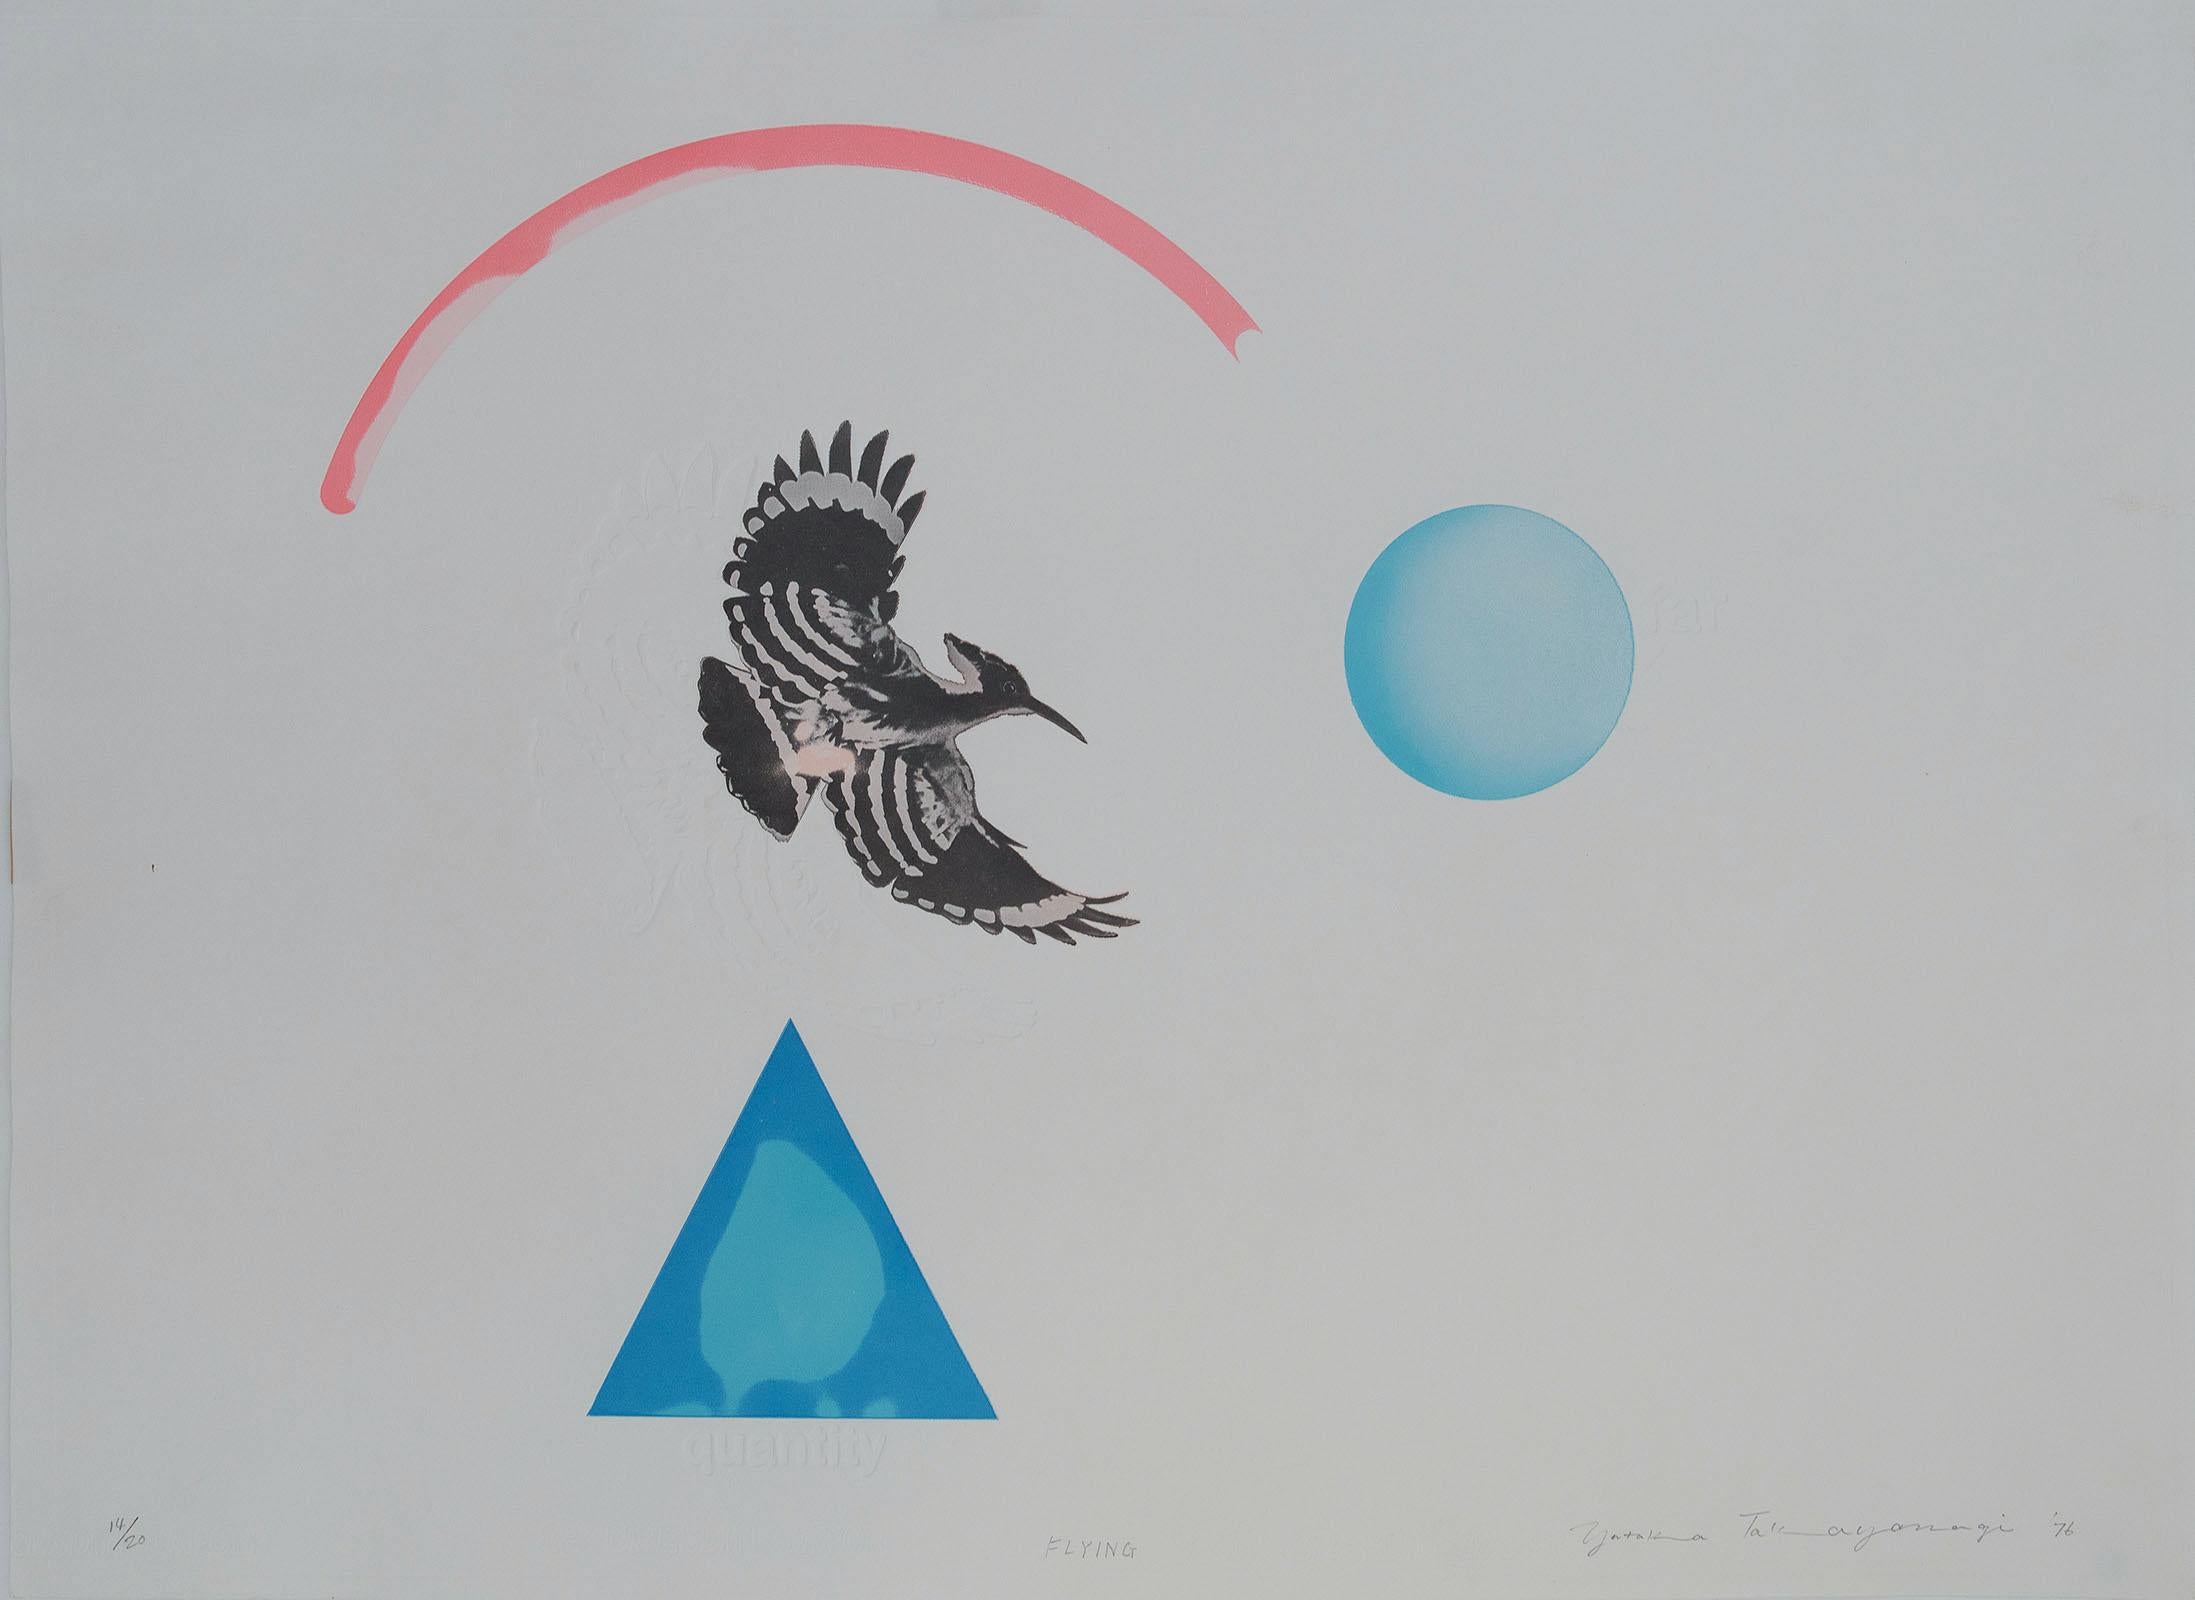 Yutaka Takayanagi Abstract Print - Flying